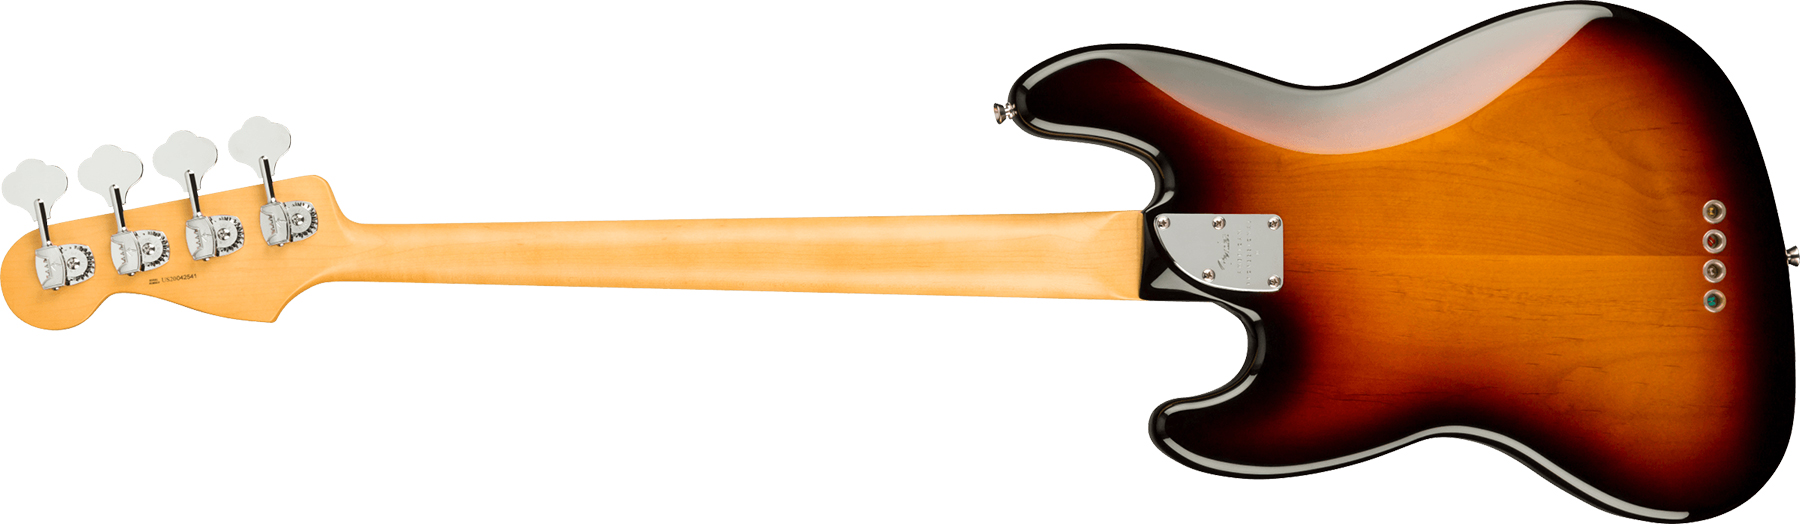 Fender Jazz Bass Fretless American Professional Ii Usa Rw - 3-color Sunburst - Bajo eléctrico de cuerpo sólido - Variation 1